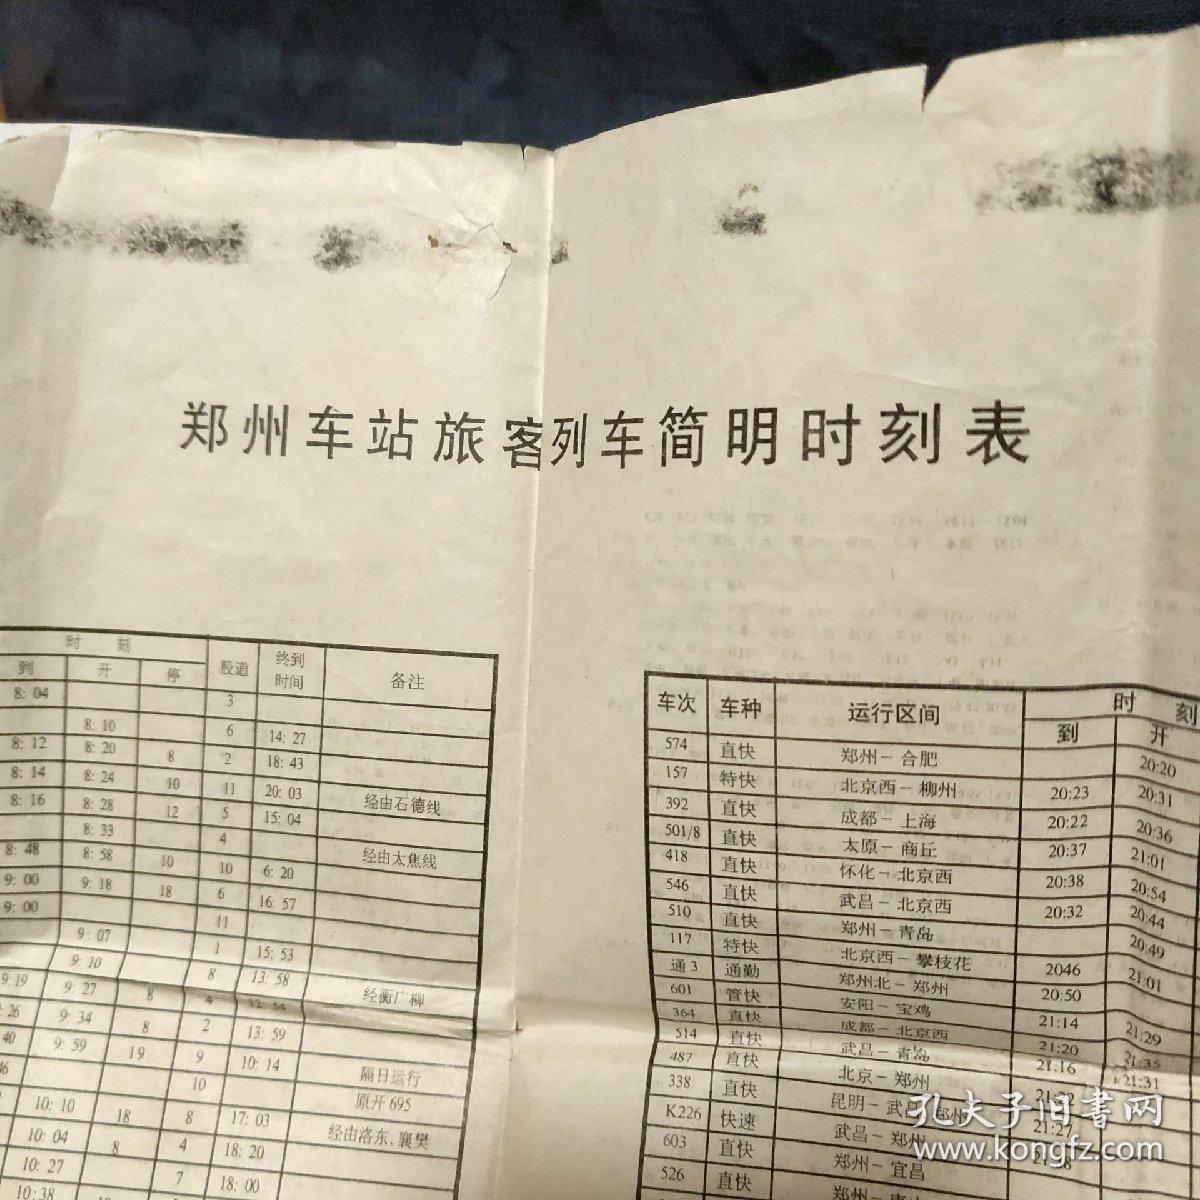 1998 2001 2002 2002－2003 2004年
郑州站旅客列车时刻表
5张合售 大小不一
2004年彩色
南1右